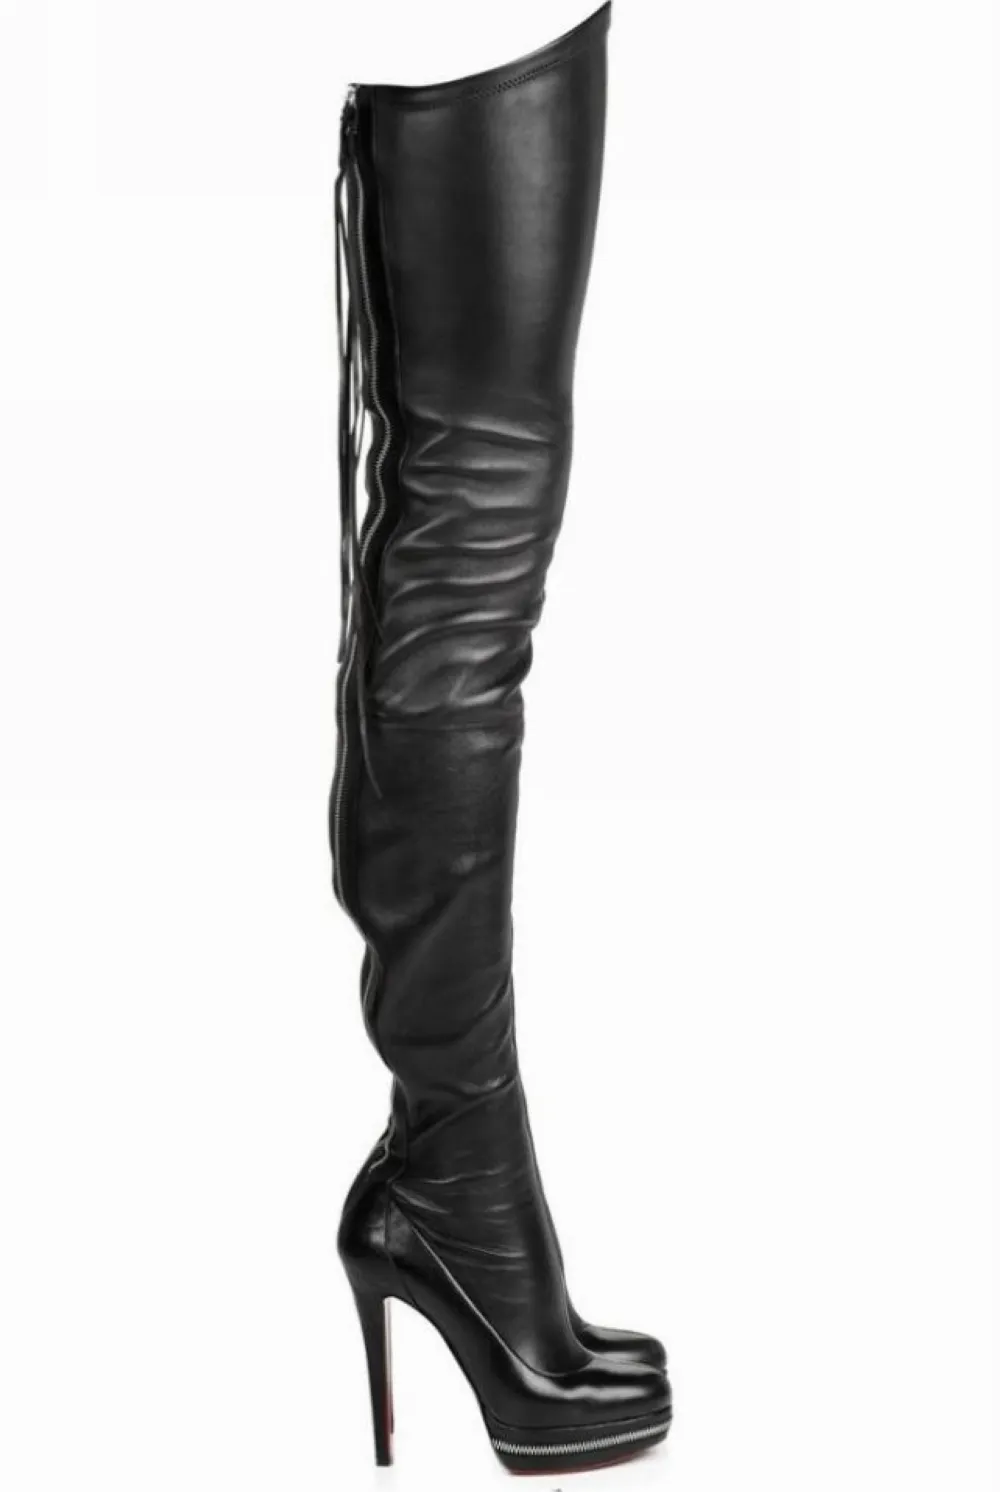 Sıcak satış- botlar kadın yüksek botlar en kaliteli İtalyan elastik puan slip-on boot kadın stiletto topuk ayakkabıları uyluk yüksek bot seksi zy465